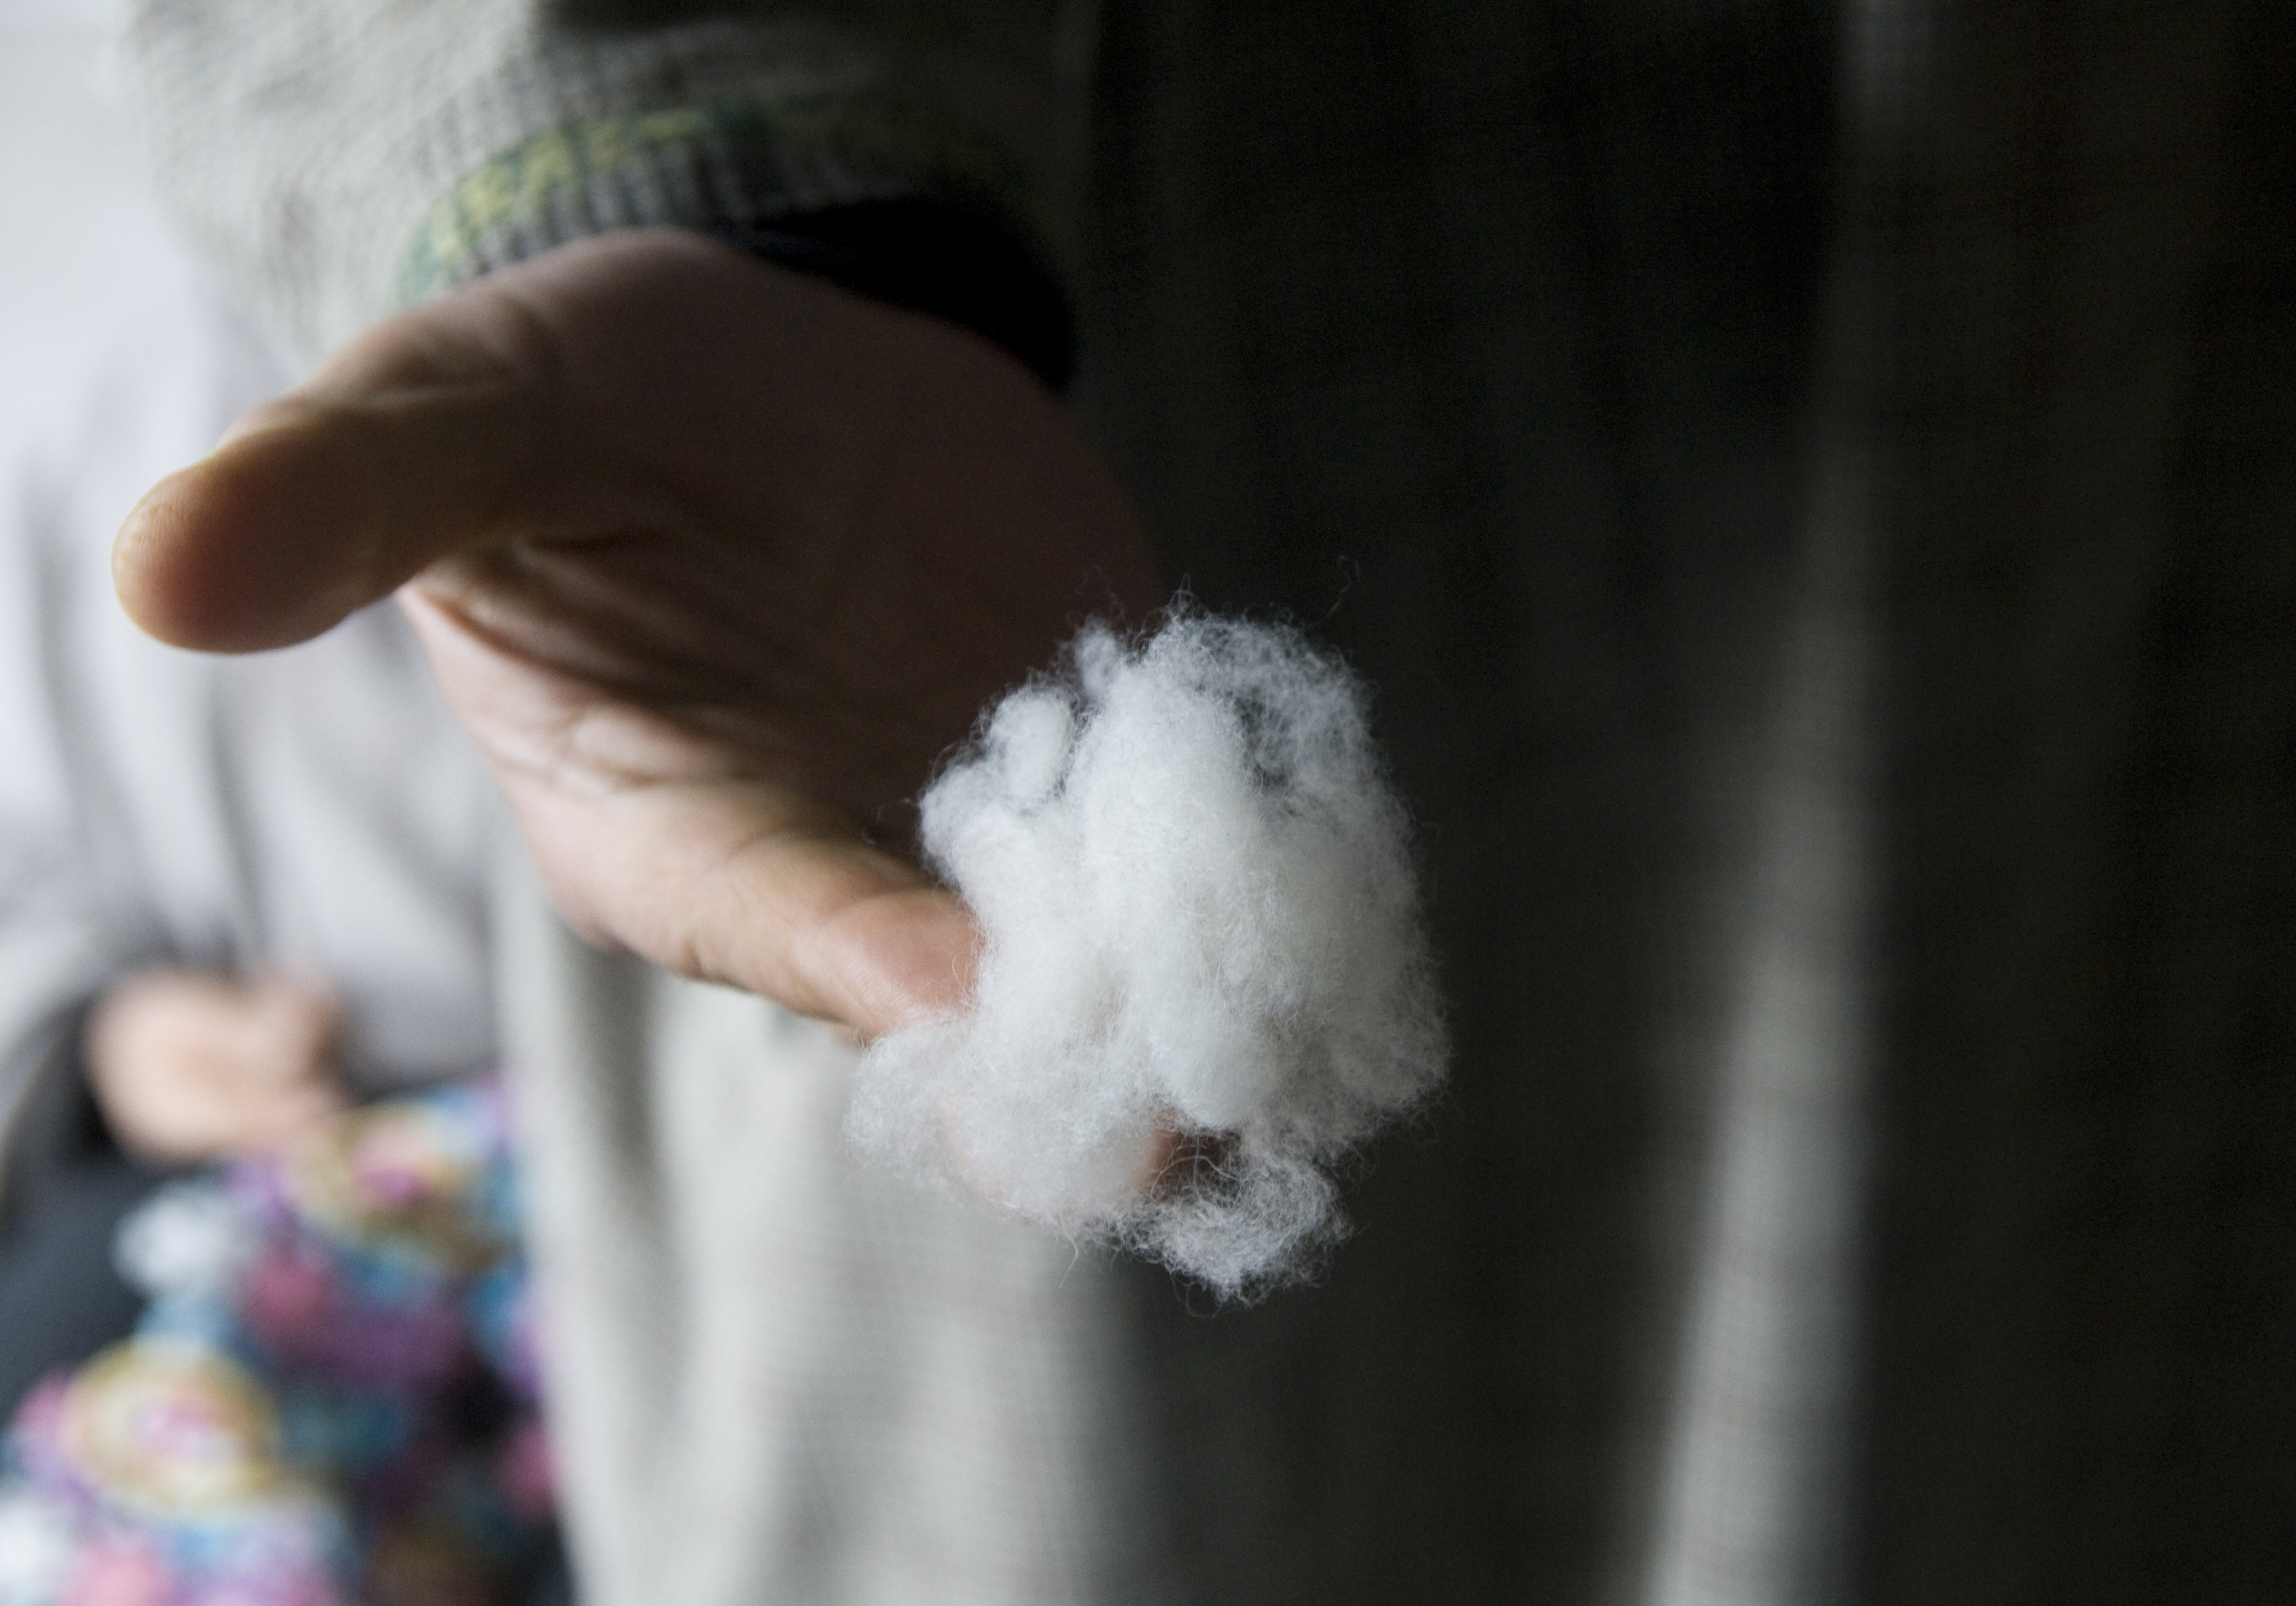 Raw pashmina wool (photo: Sugato Mukherjee)